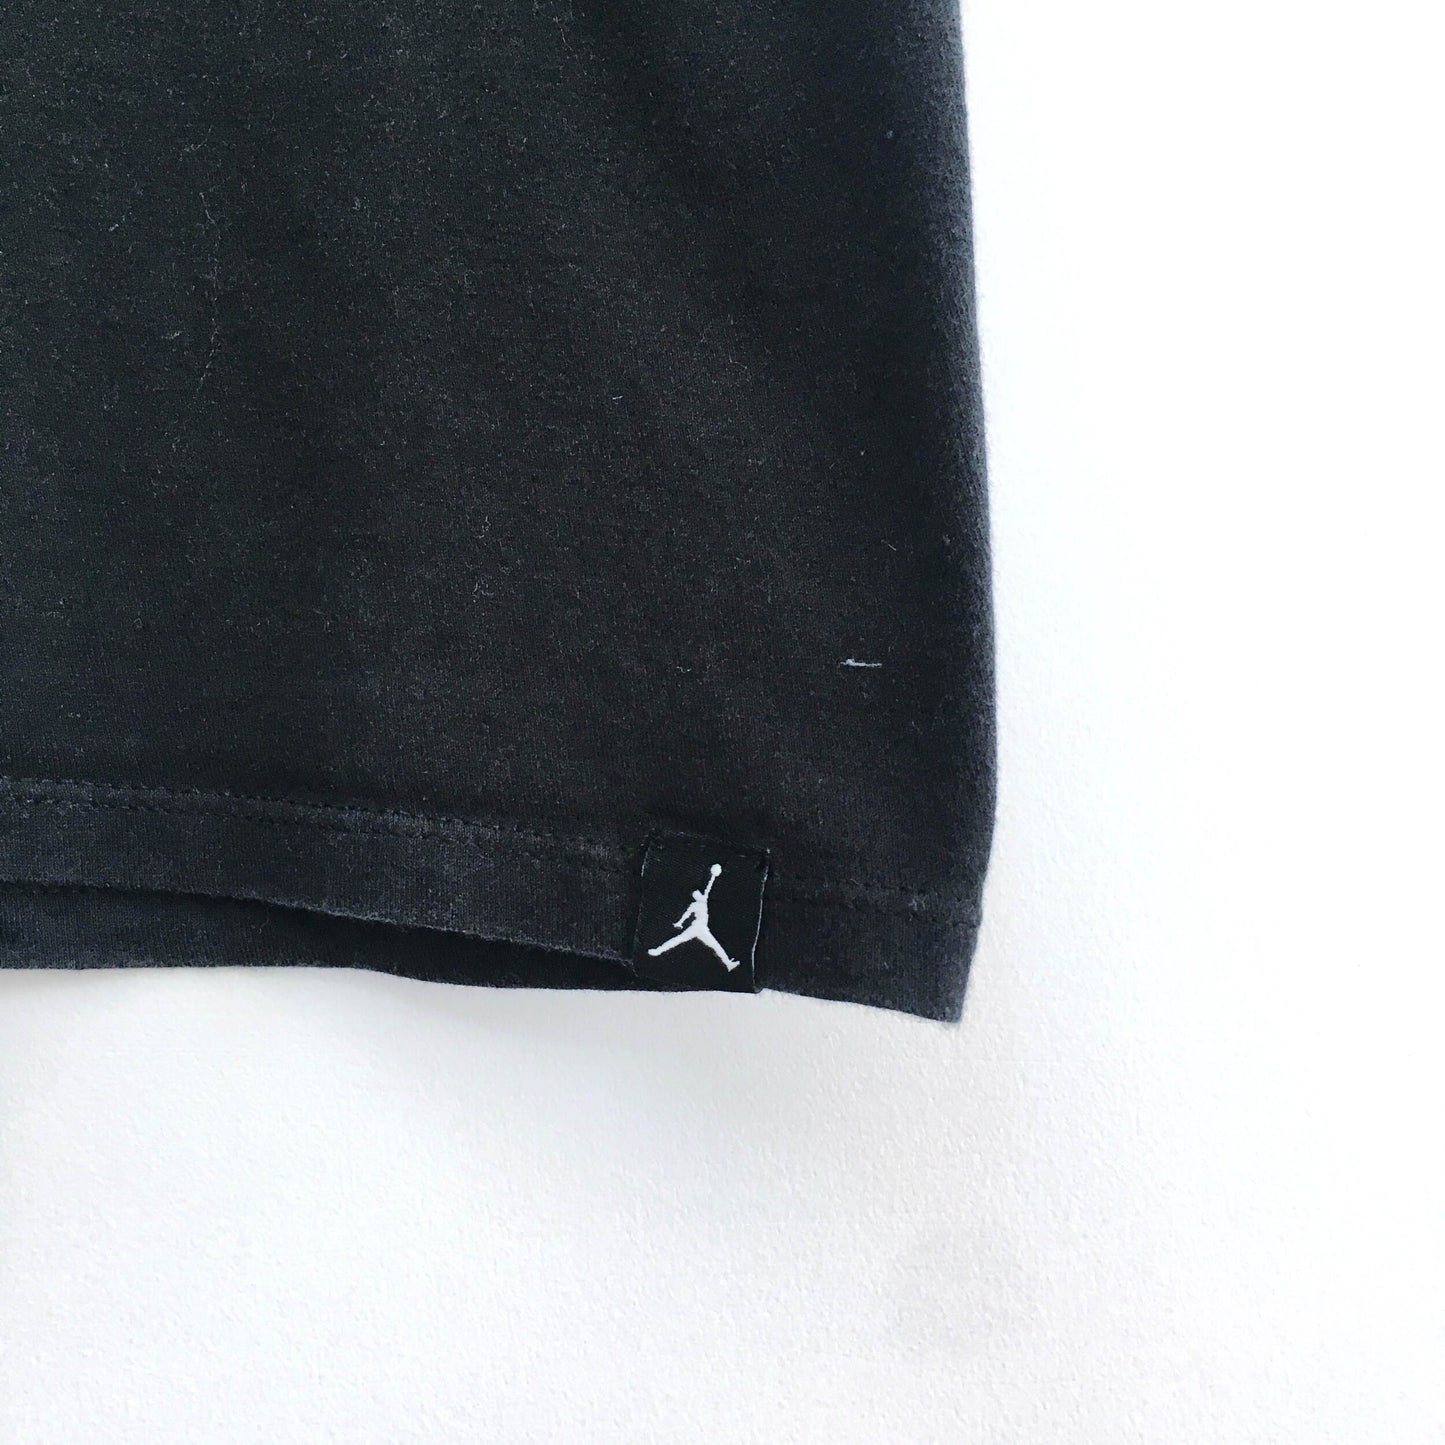 Air Jordan x Gatorade Tee - size Small